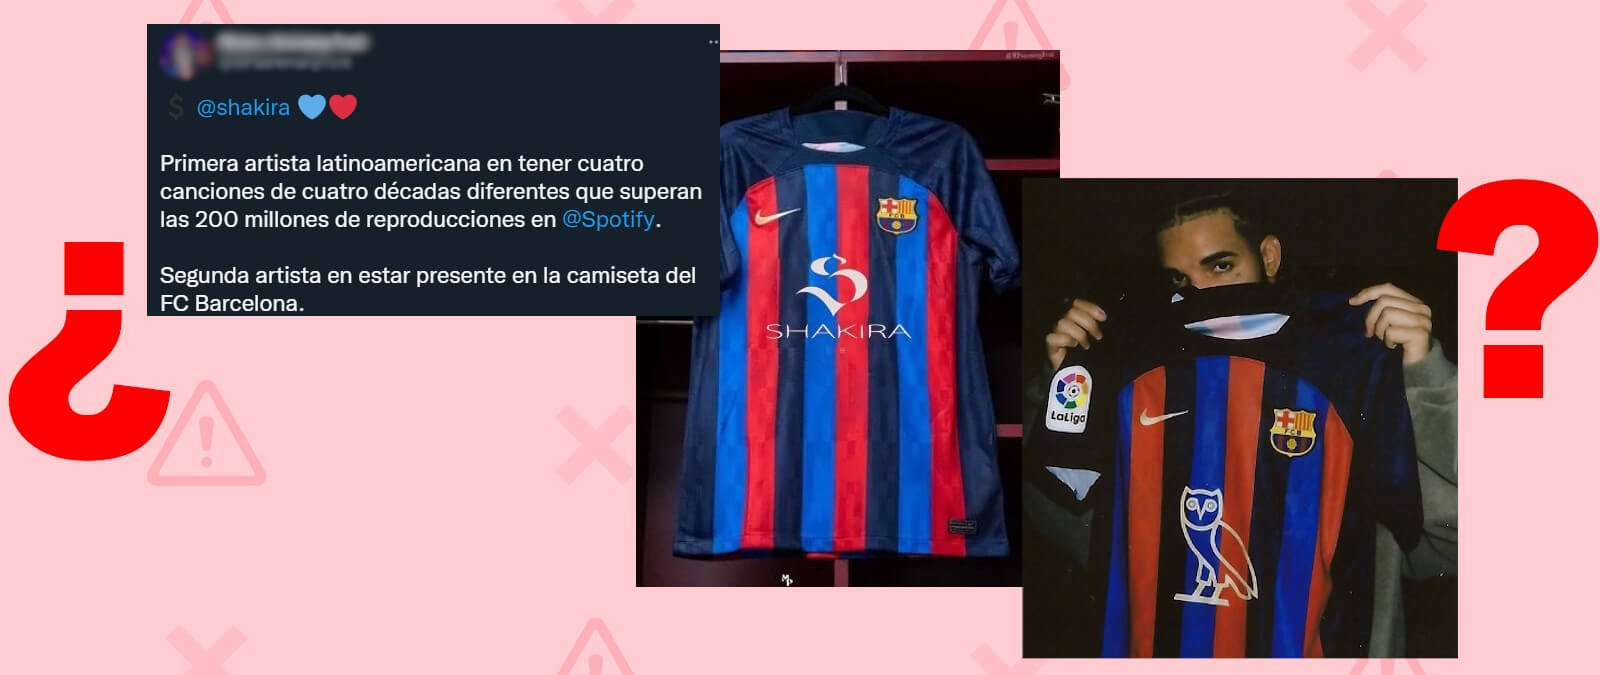 Qué sabemos sobre que Piqué pueda vestir la camiseta del Barcelona con el  logotipo de Shakira? · Maldita.es - Periodismo para que no te la cuelen